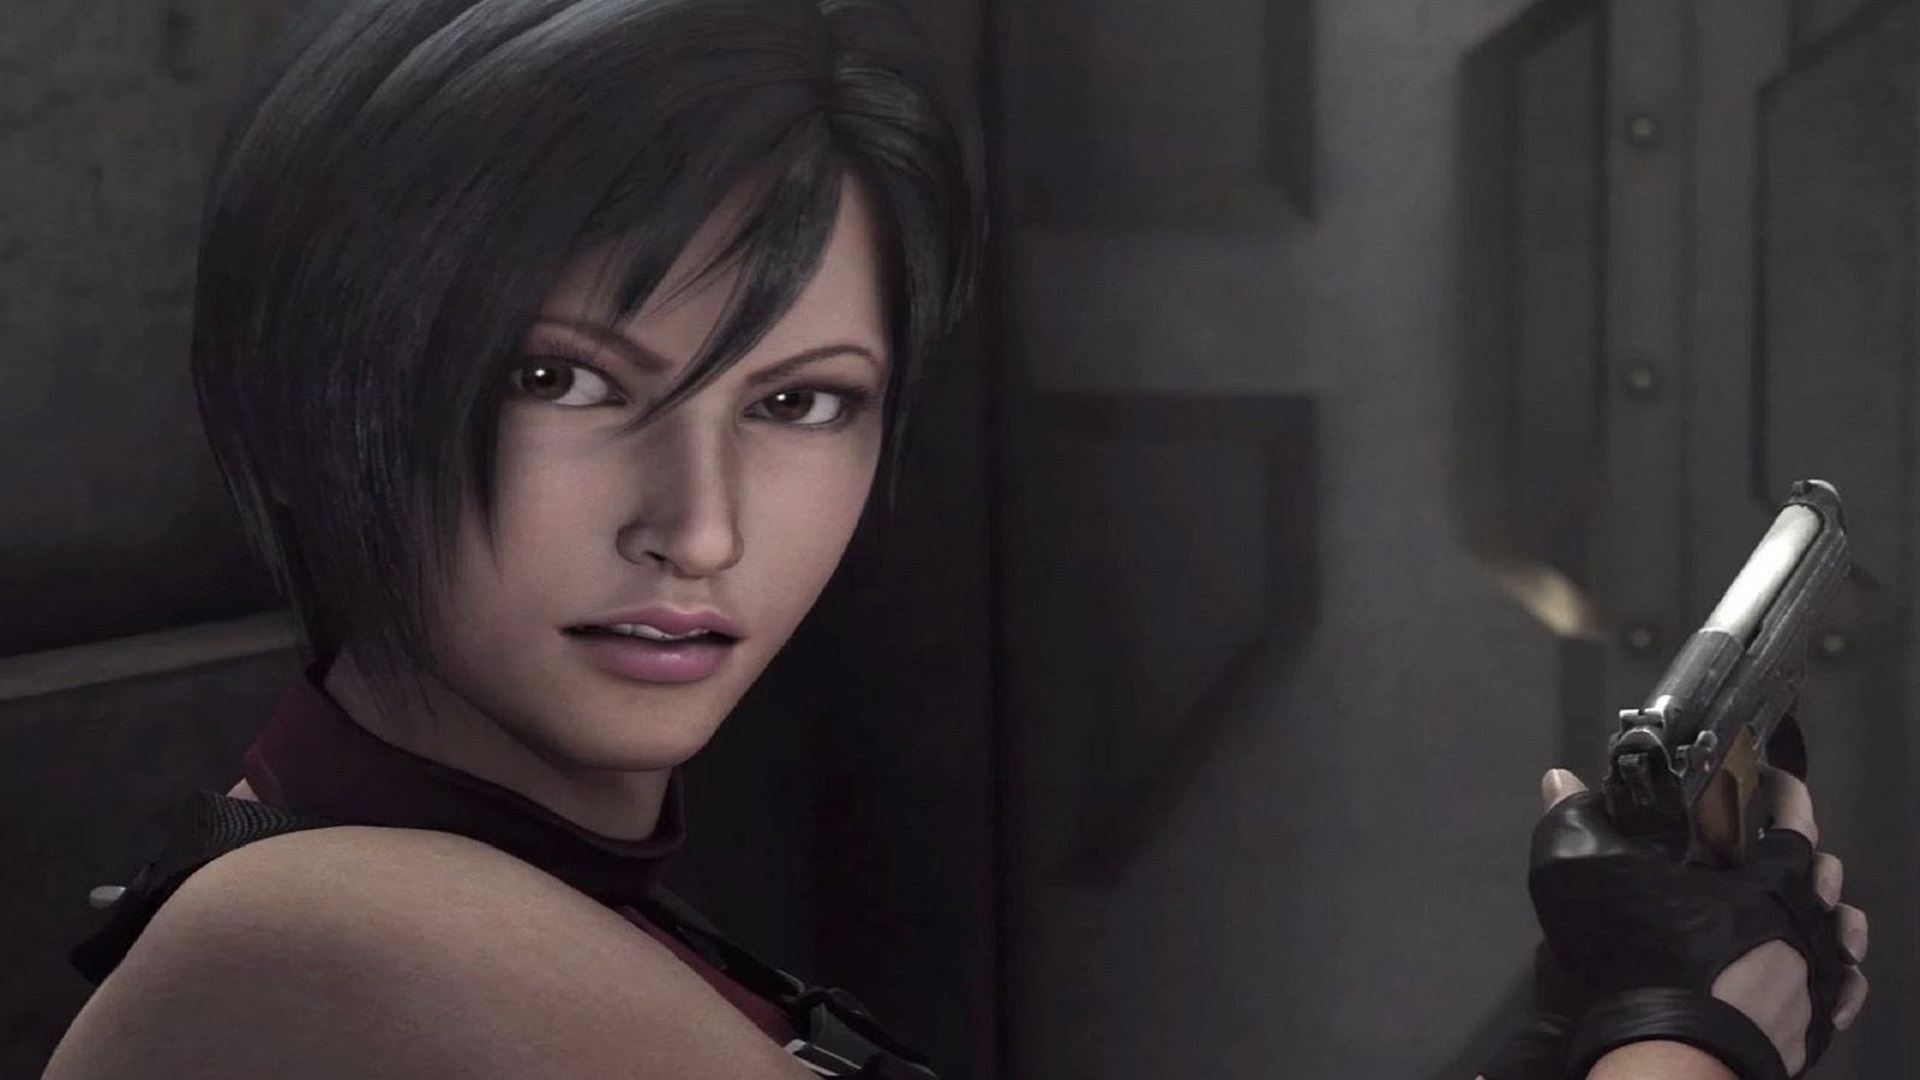 Resident Evil 2 Ada Wong Remake , HD Wallpaper & Backgrounds